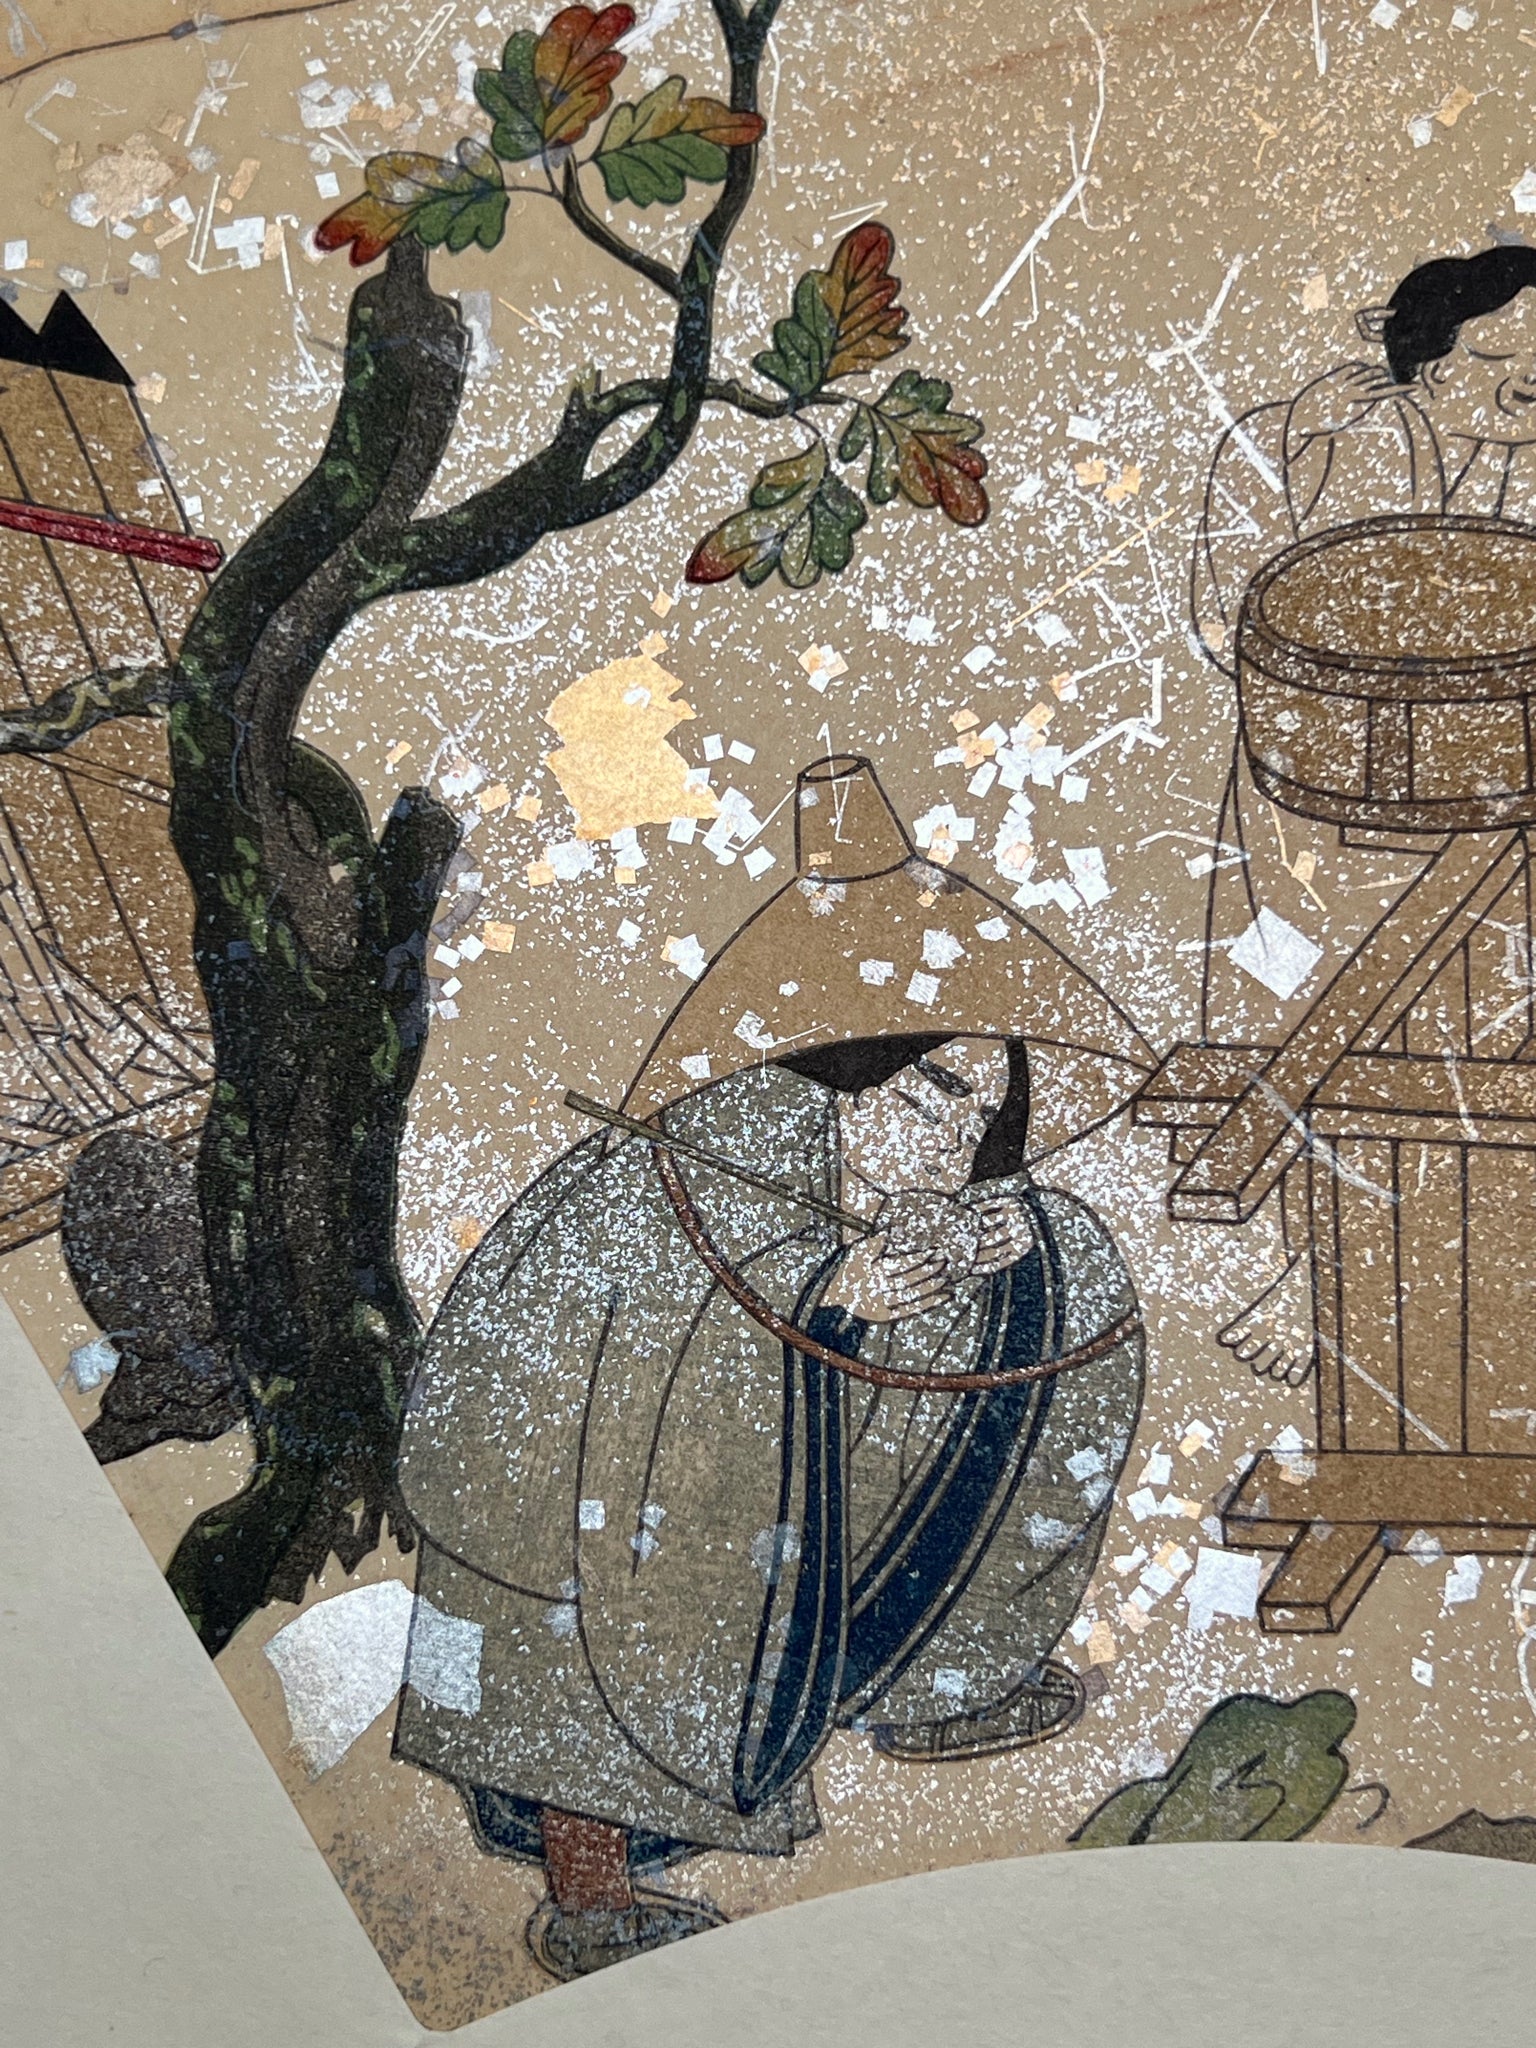 Estampe japonaise en forme d'éventail parsemée de fragments d'or et d'argent, gros plan femme qui boit de l'eau avec une louche accroupie sous un chêne, feuilles d'automne, chapeau, puits.